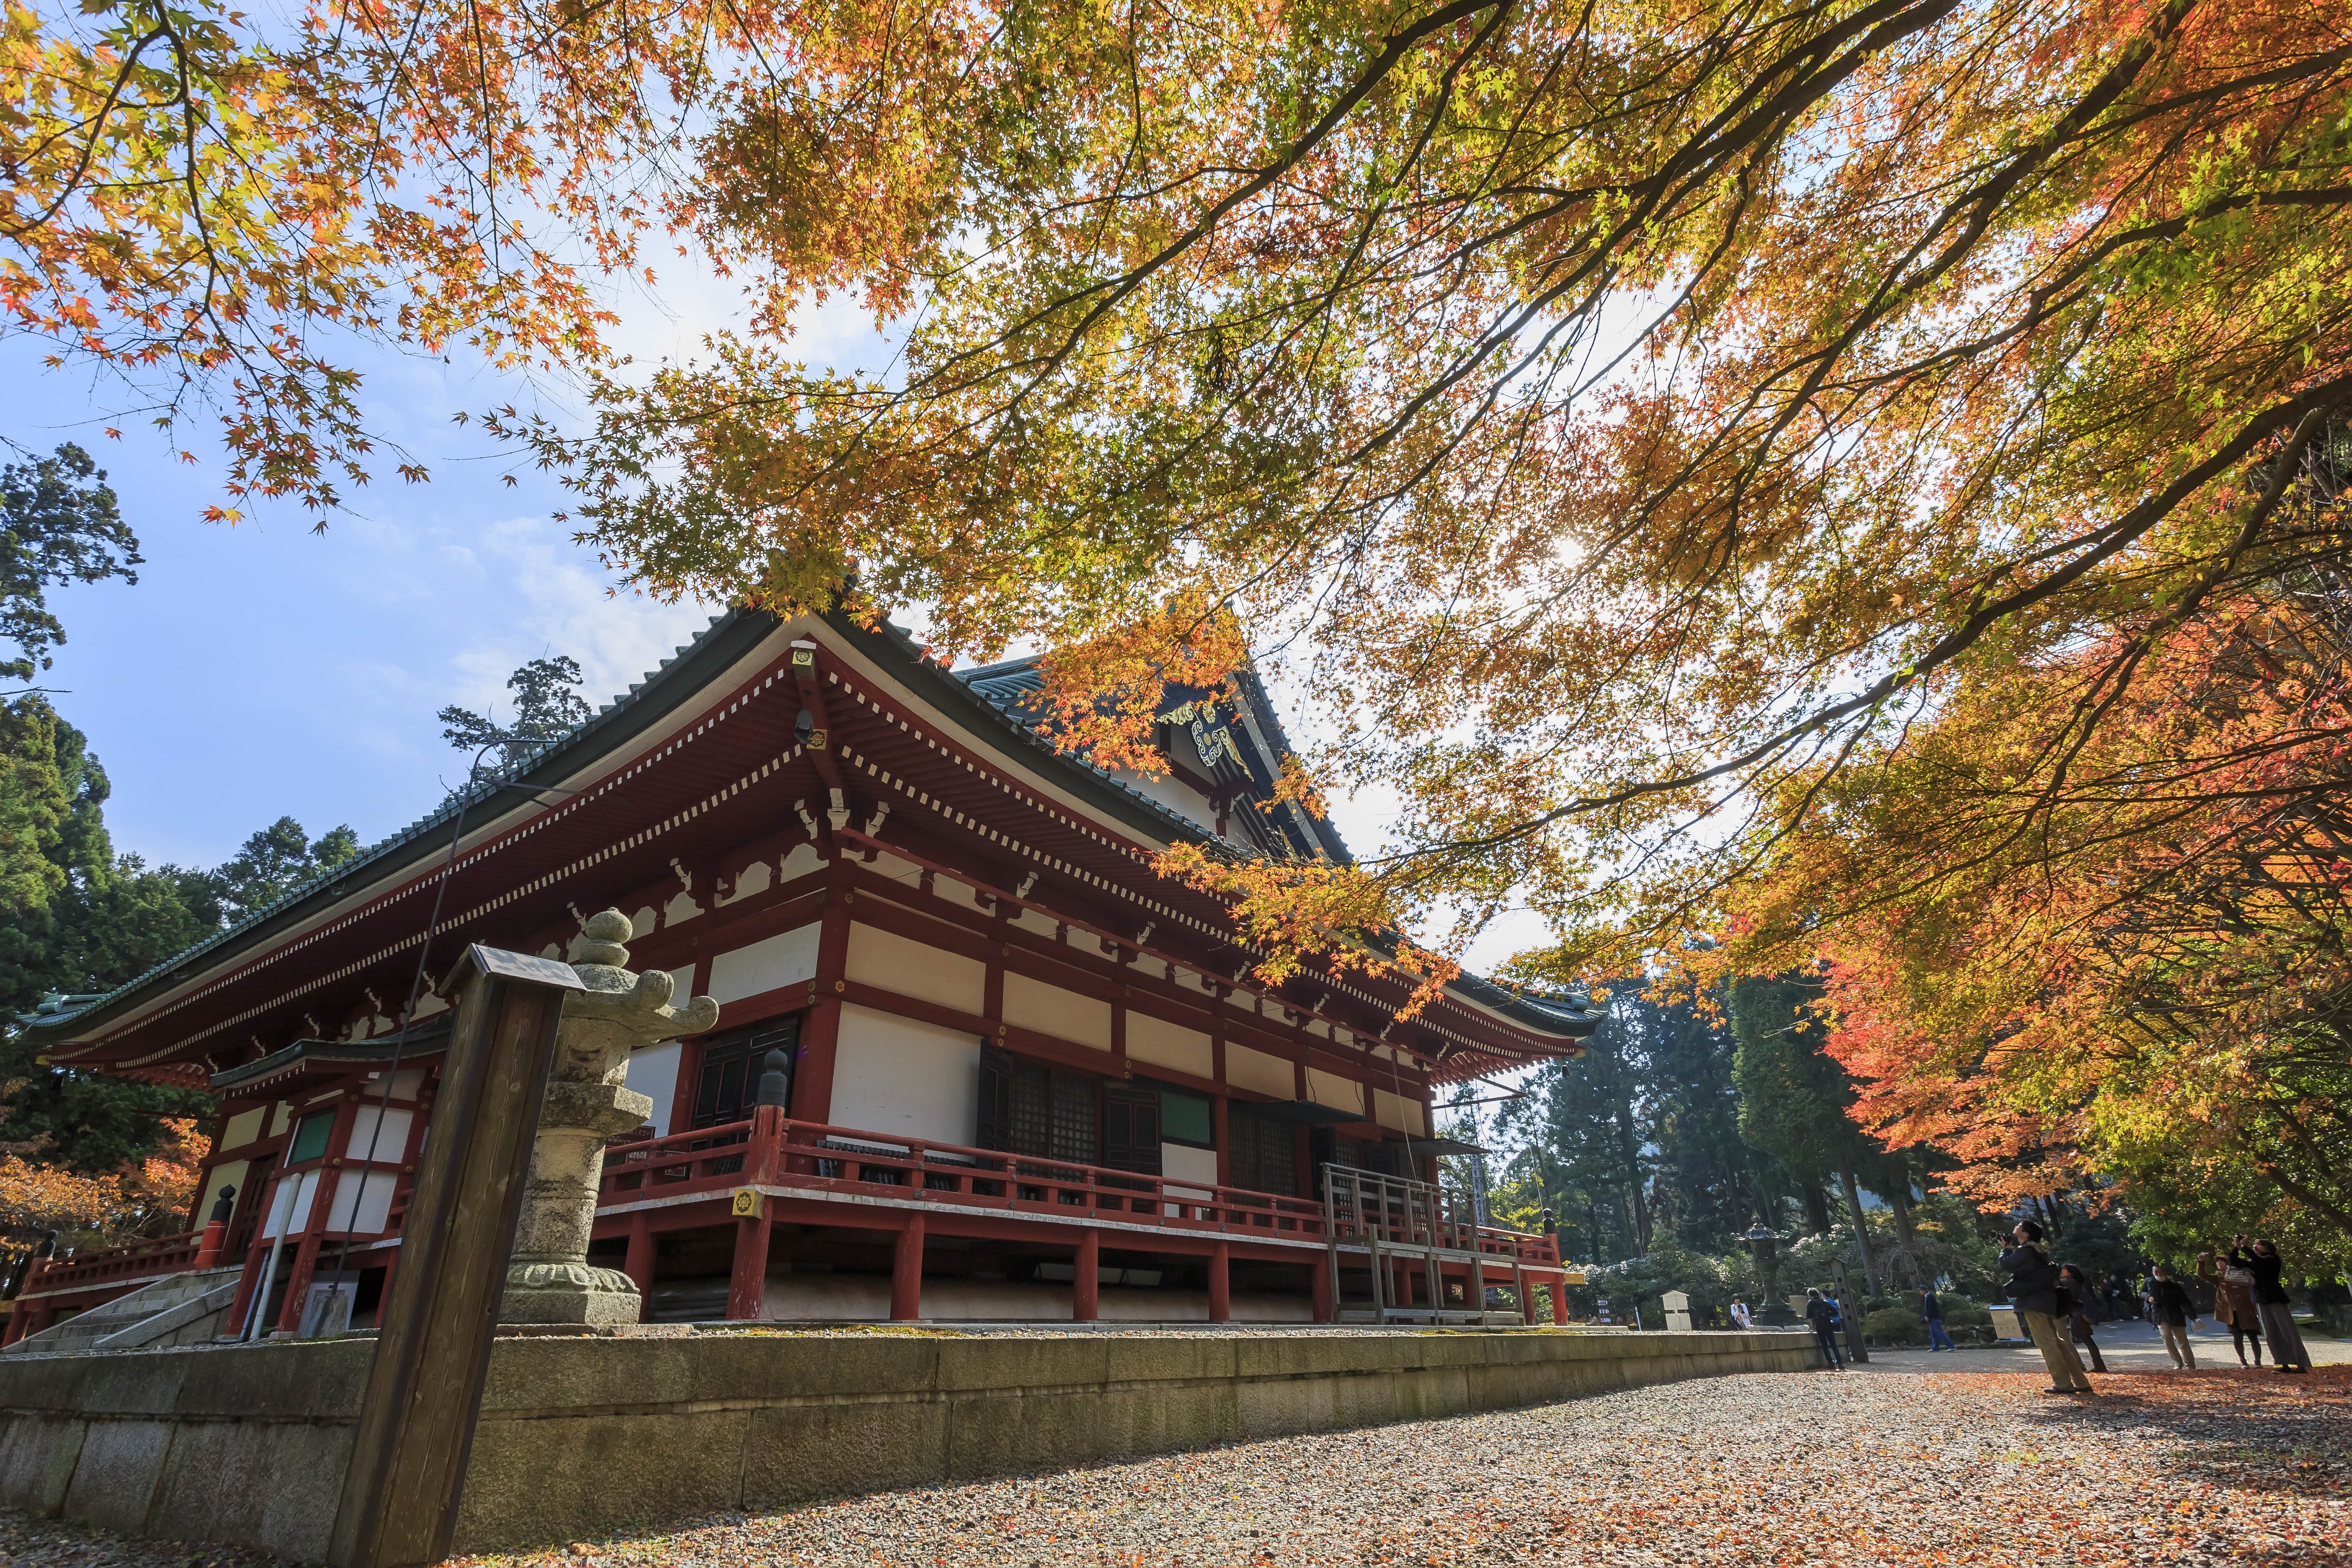 erste Reichseiniger Oda Nobunaga erstörte im 16.Jhd einen Großteil der Tempelanlage.